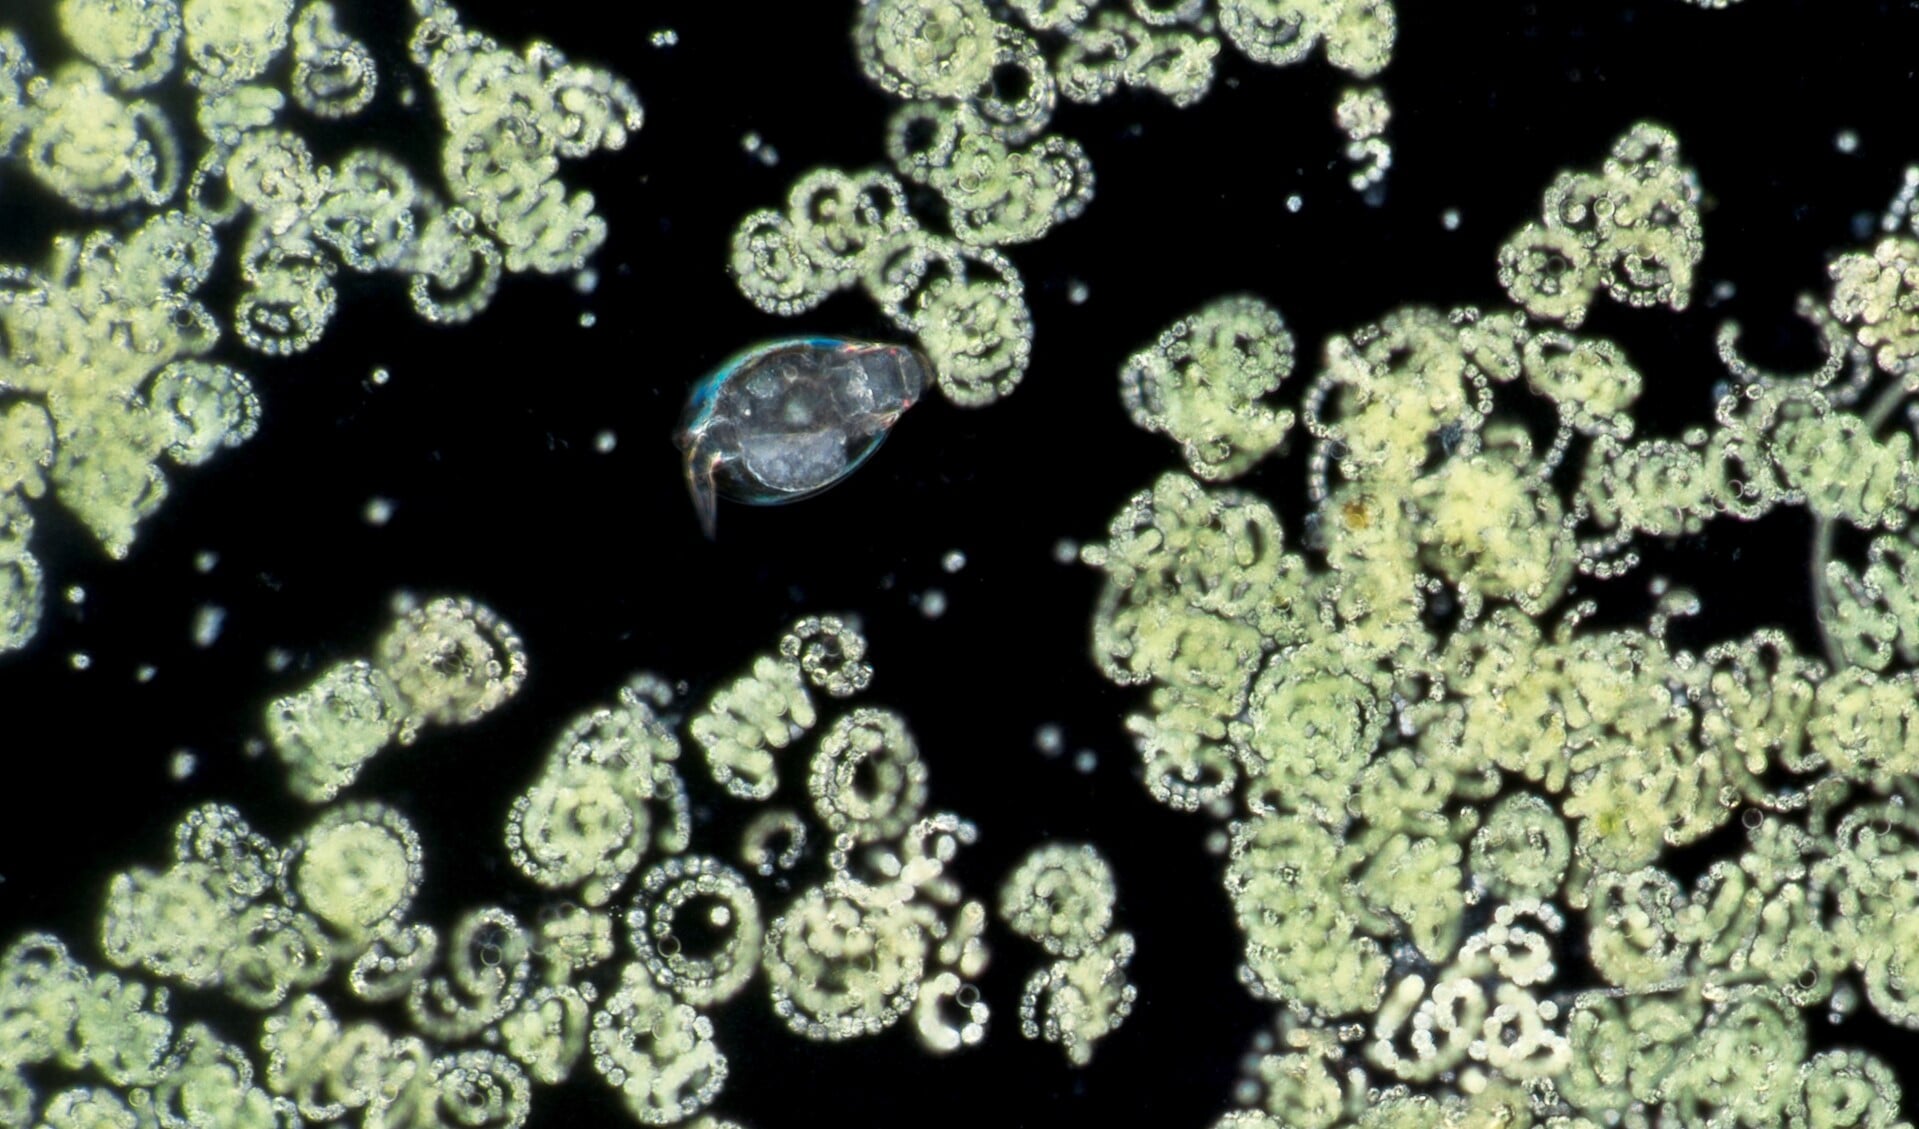 Kolonies blauwalgen en roeipootkreeftje uit de Berkelse plas (foto: Wim van Egmond)